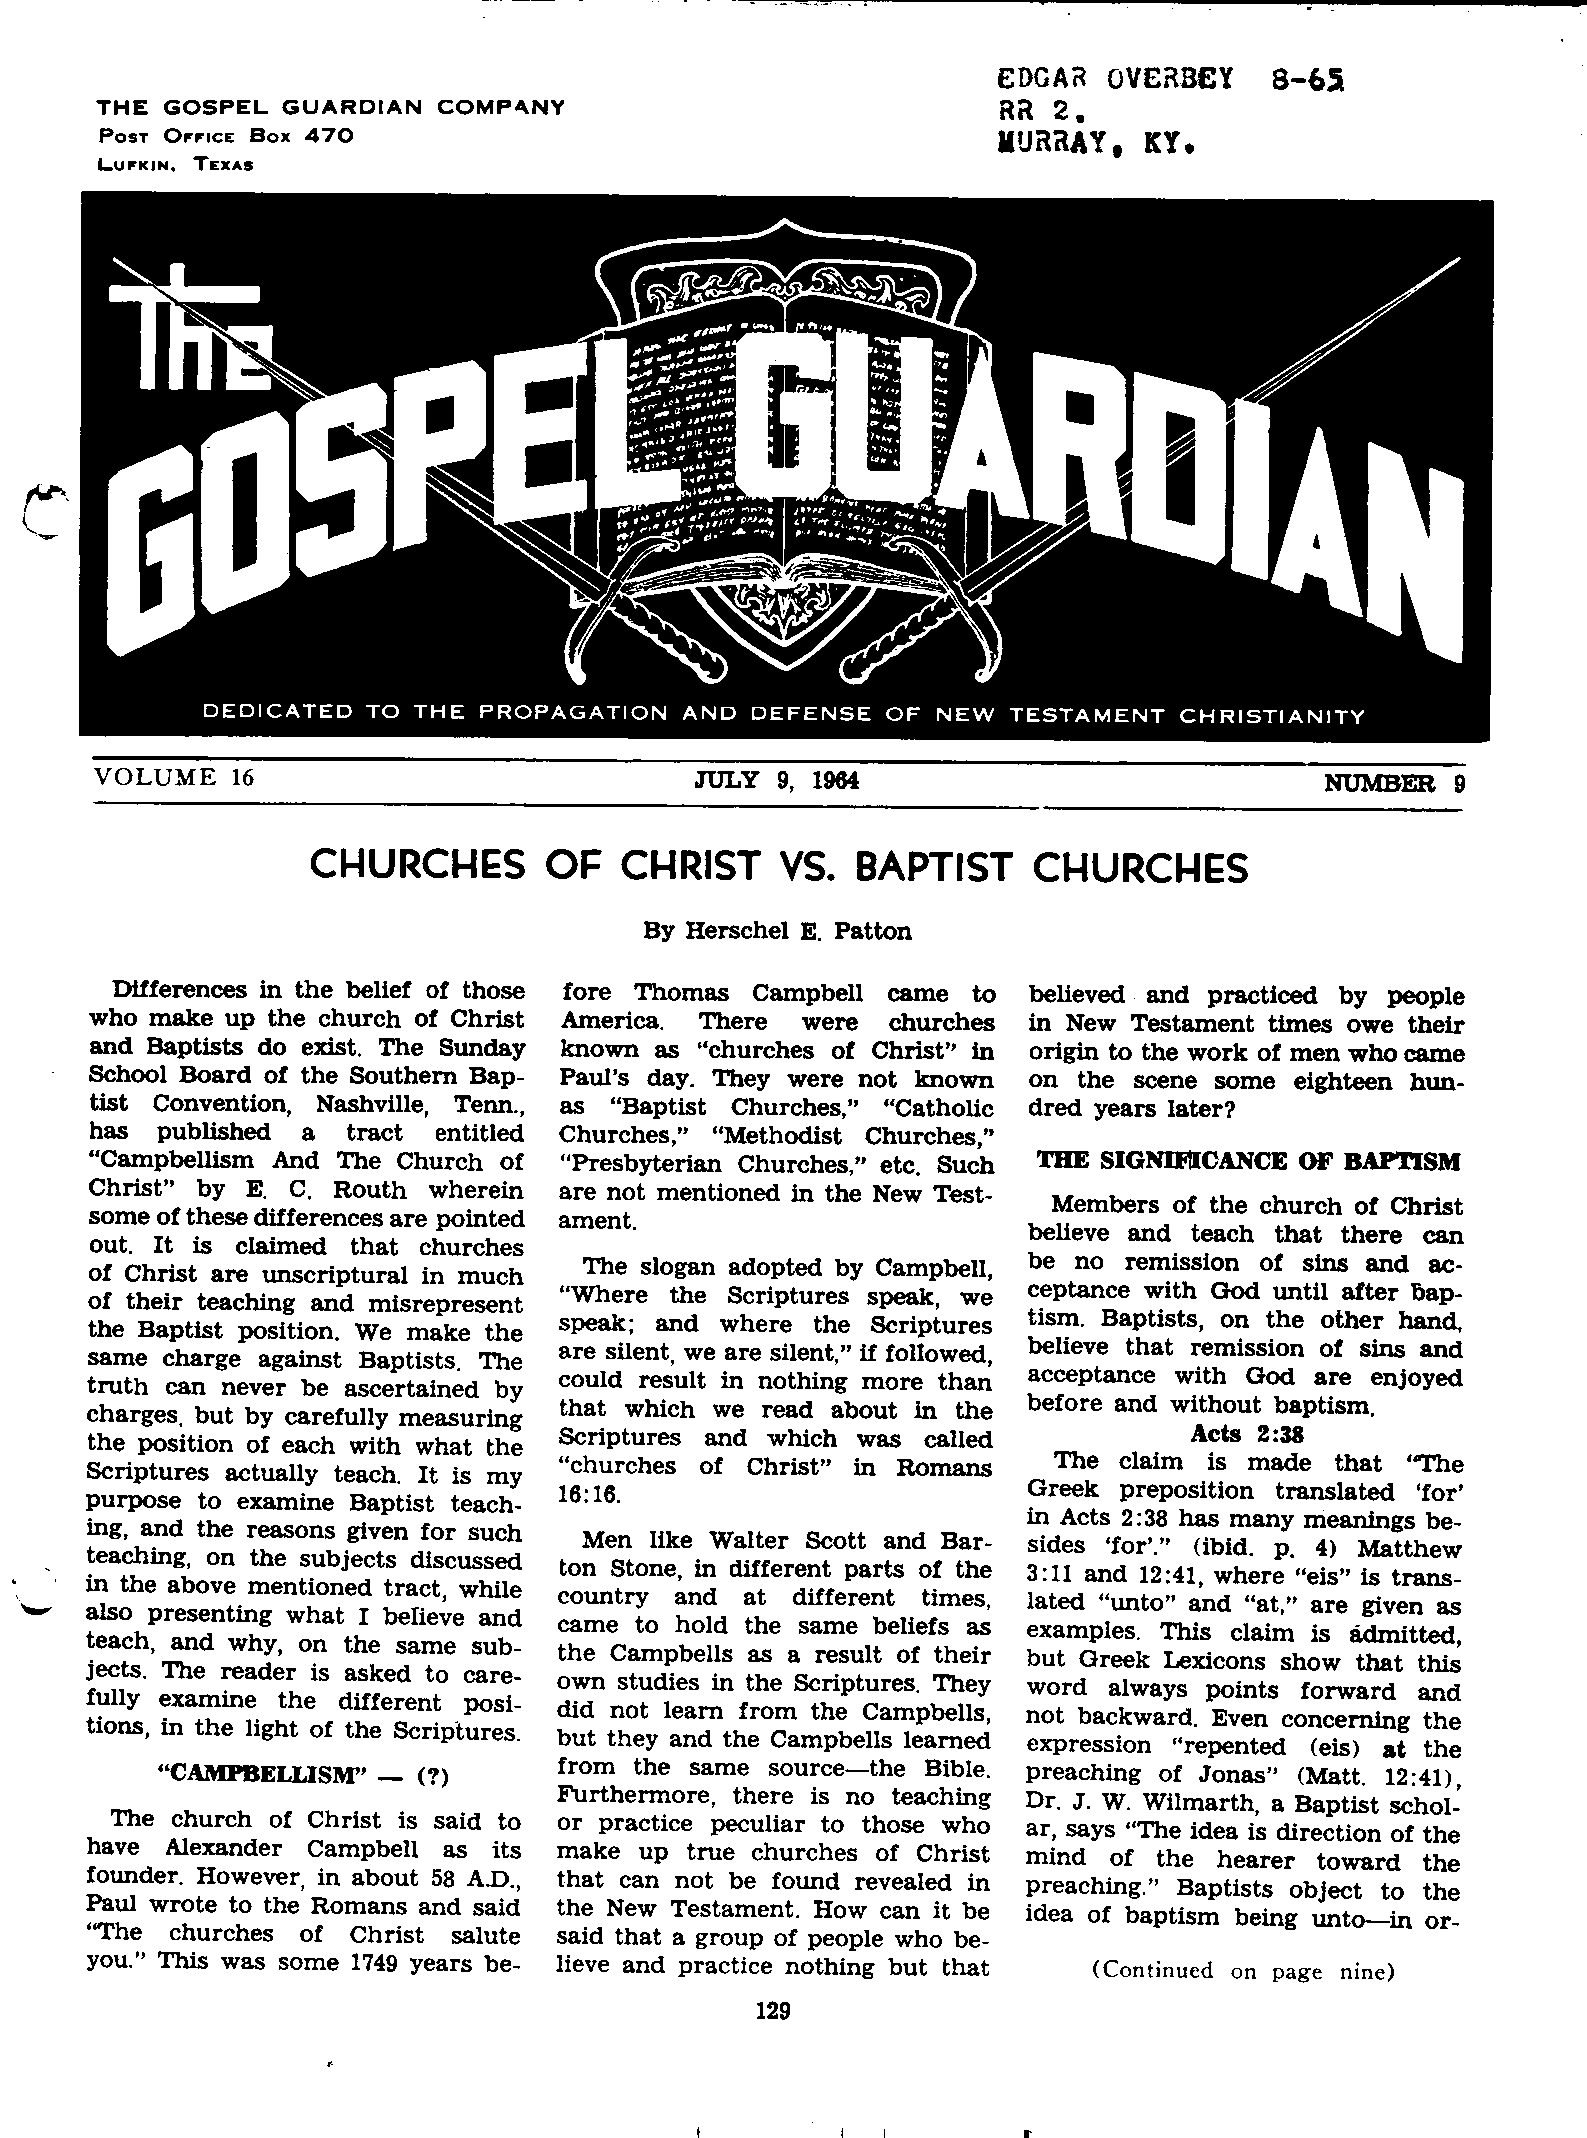 Gospel Guardian Original: Vol.16 No.9 Pg.1